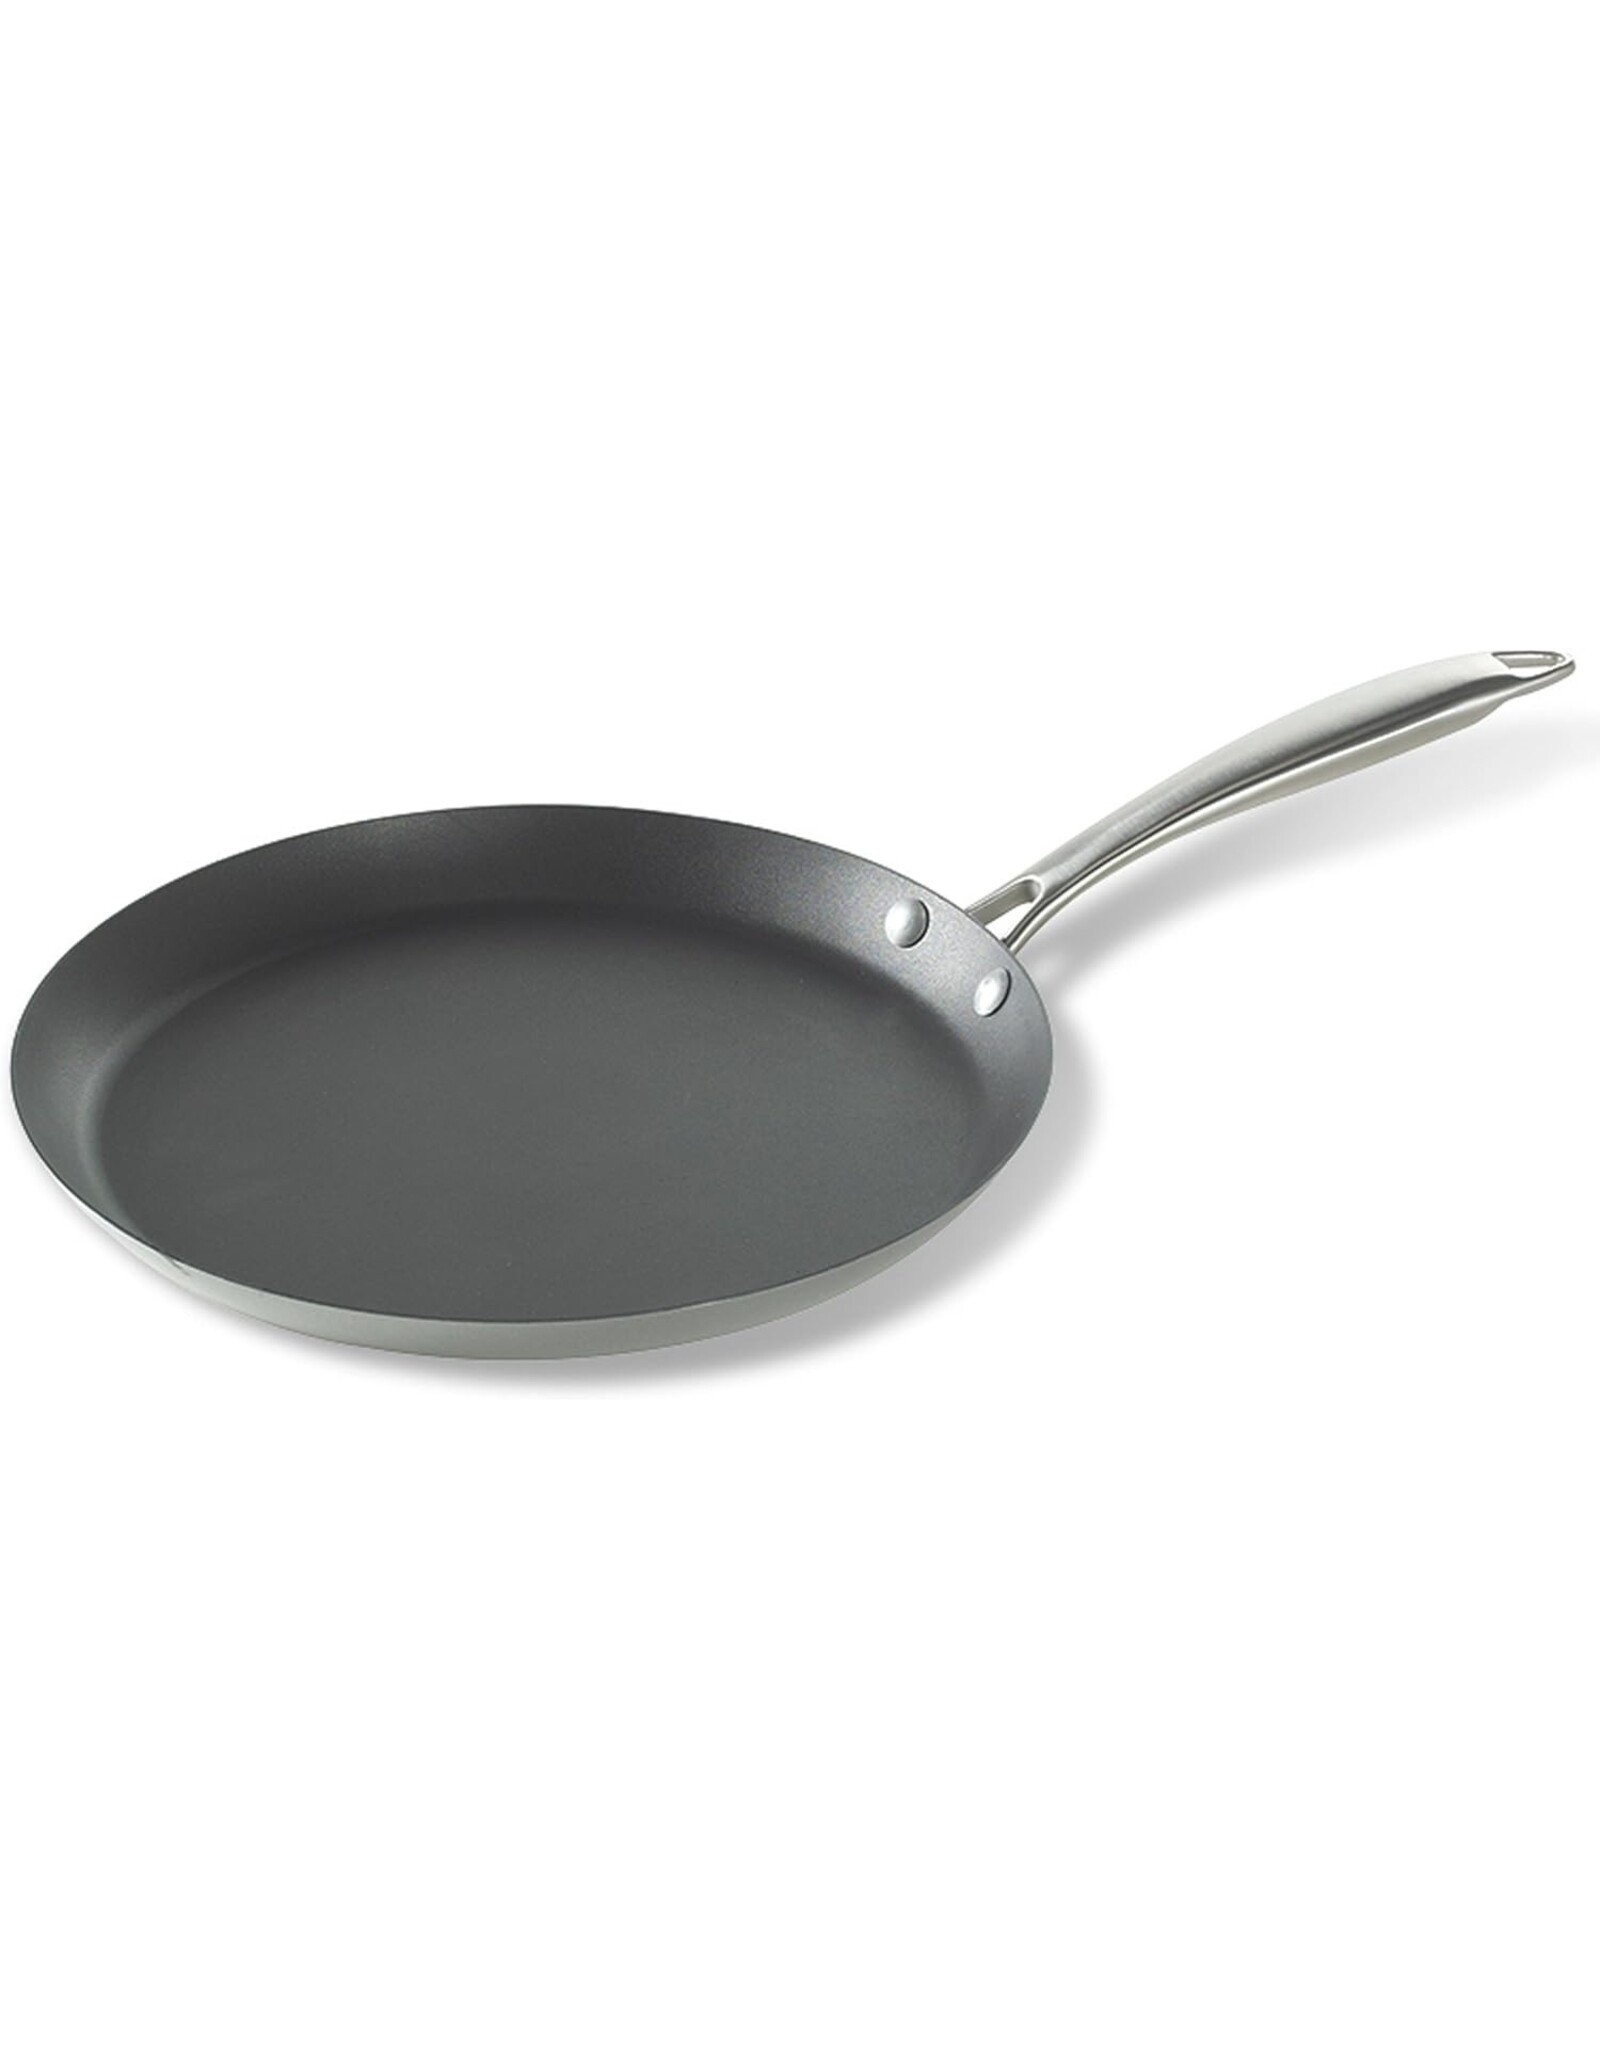 Nordic Ware Crepe Pan